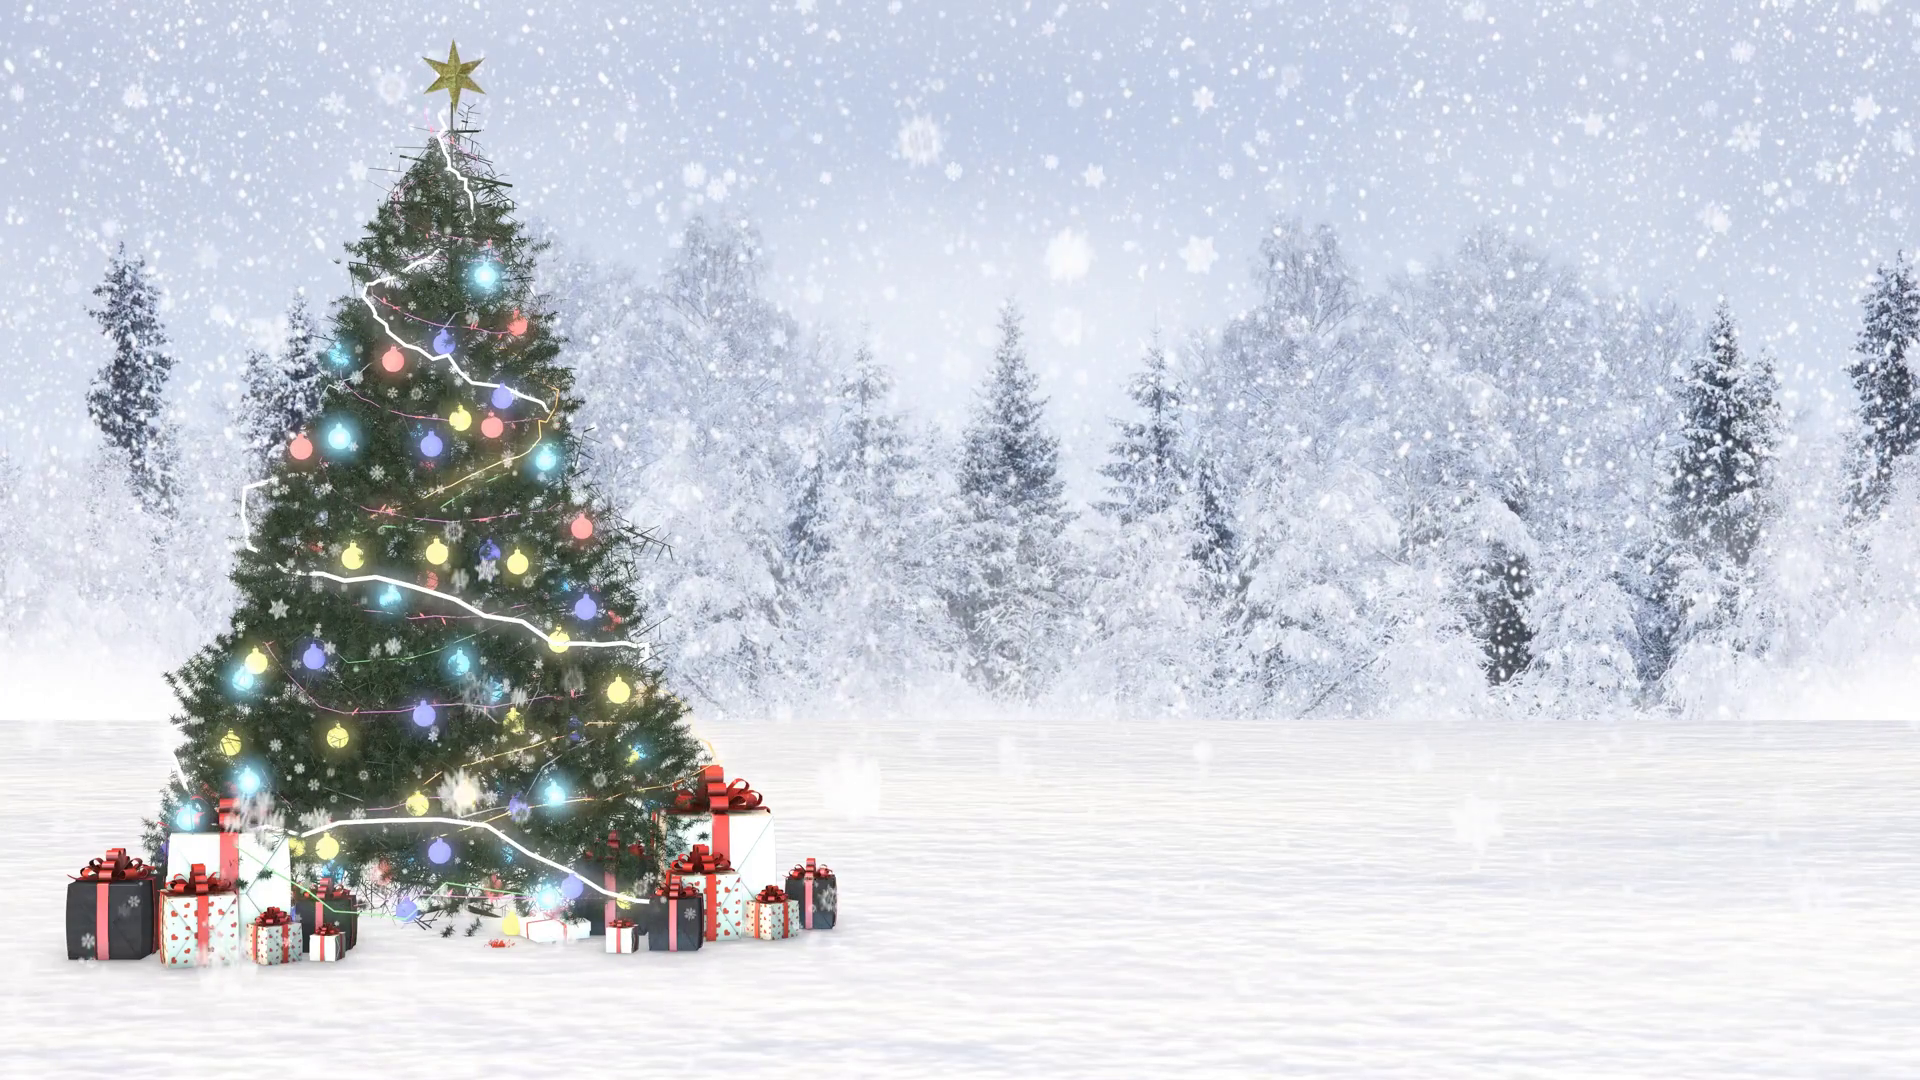 クリスマスの雪の壁紙,クリスマスツリー,雪,冬,木,クリスマスの飾り